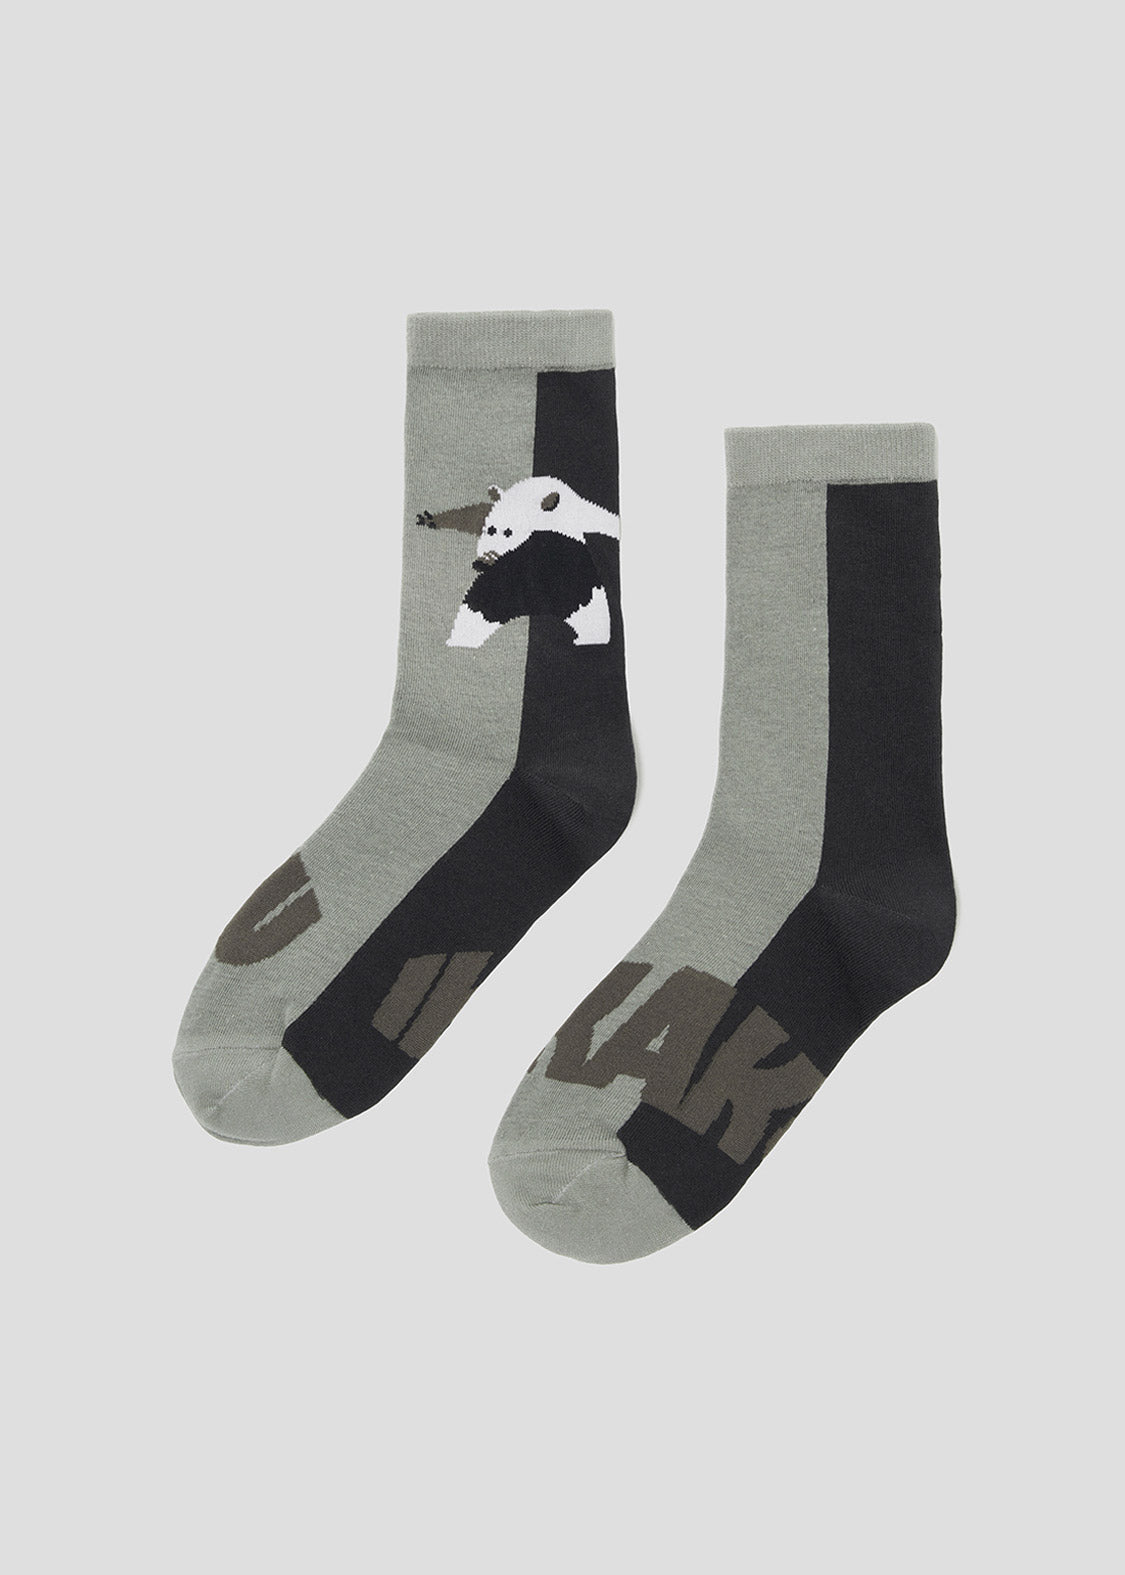 Middle Socks (Threat Anteater)